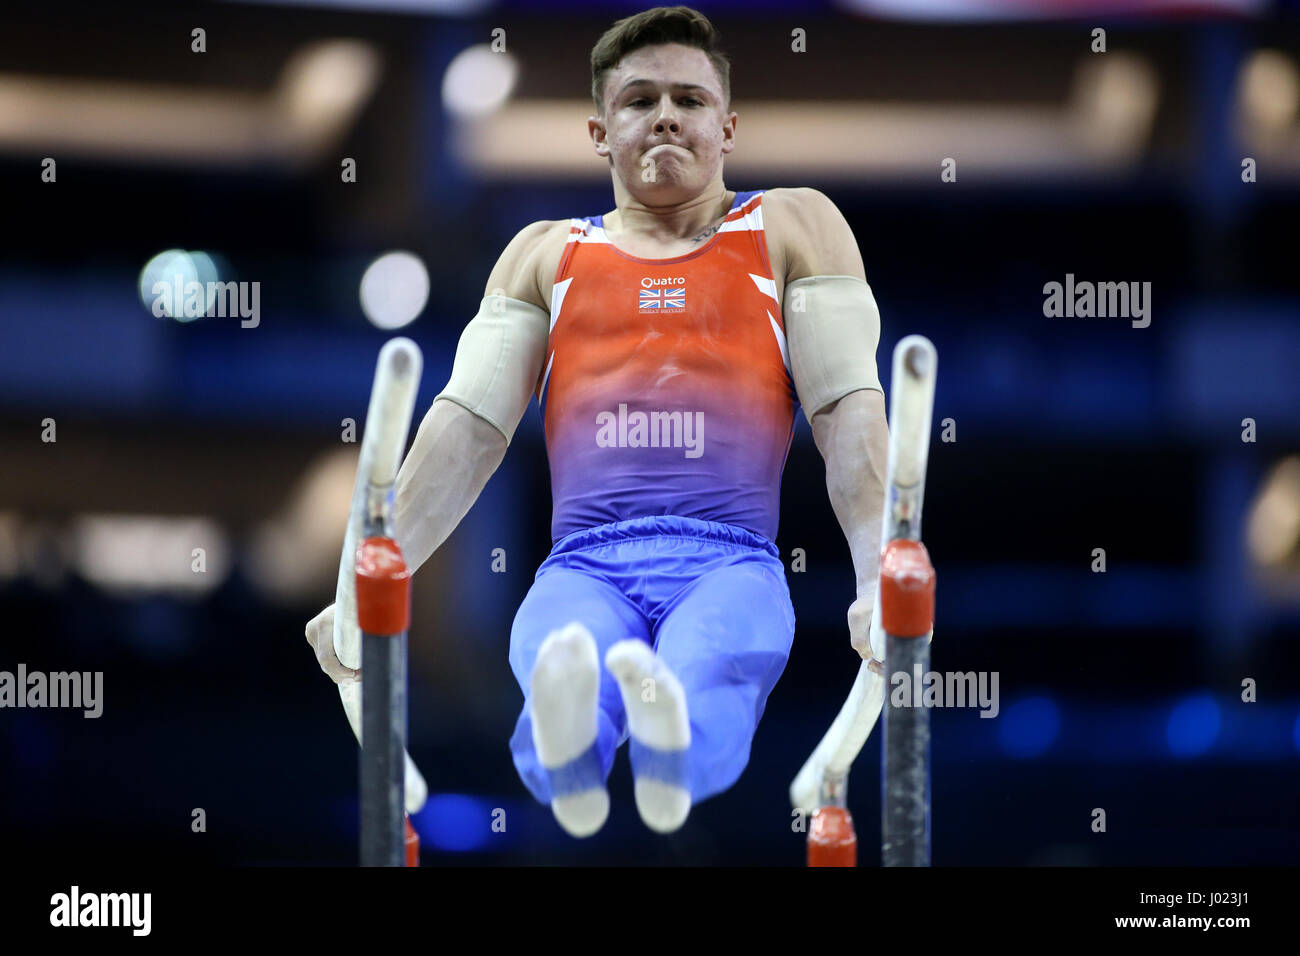 Großbritanniens Brinn Bevan konkurriert am Barren während der World Cup Gymnastik in The O2, London. Stockfoto